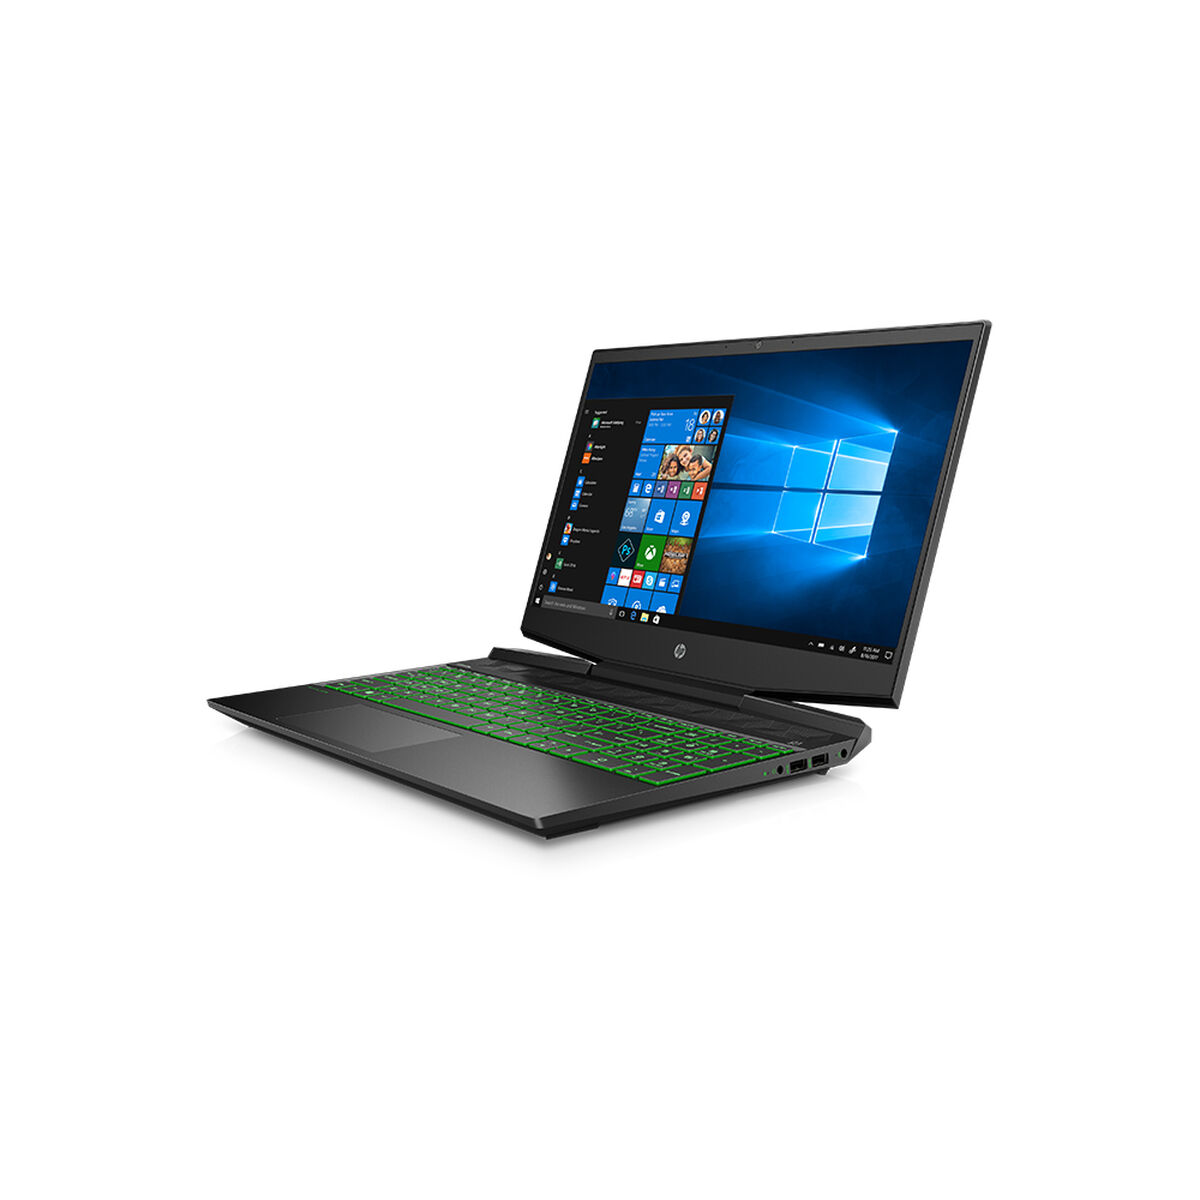 Notebook Gamer HP 15-dk0015 Core i5-9300H 8GB 256GB SSD 15.6" 3GB NVIDIA GTX 1050 + 16GB Optane